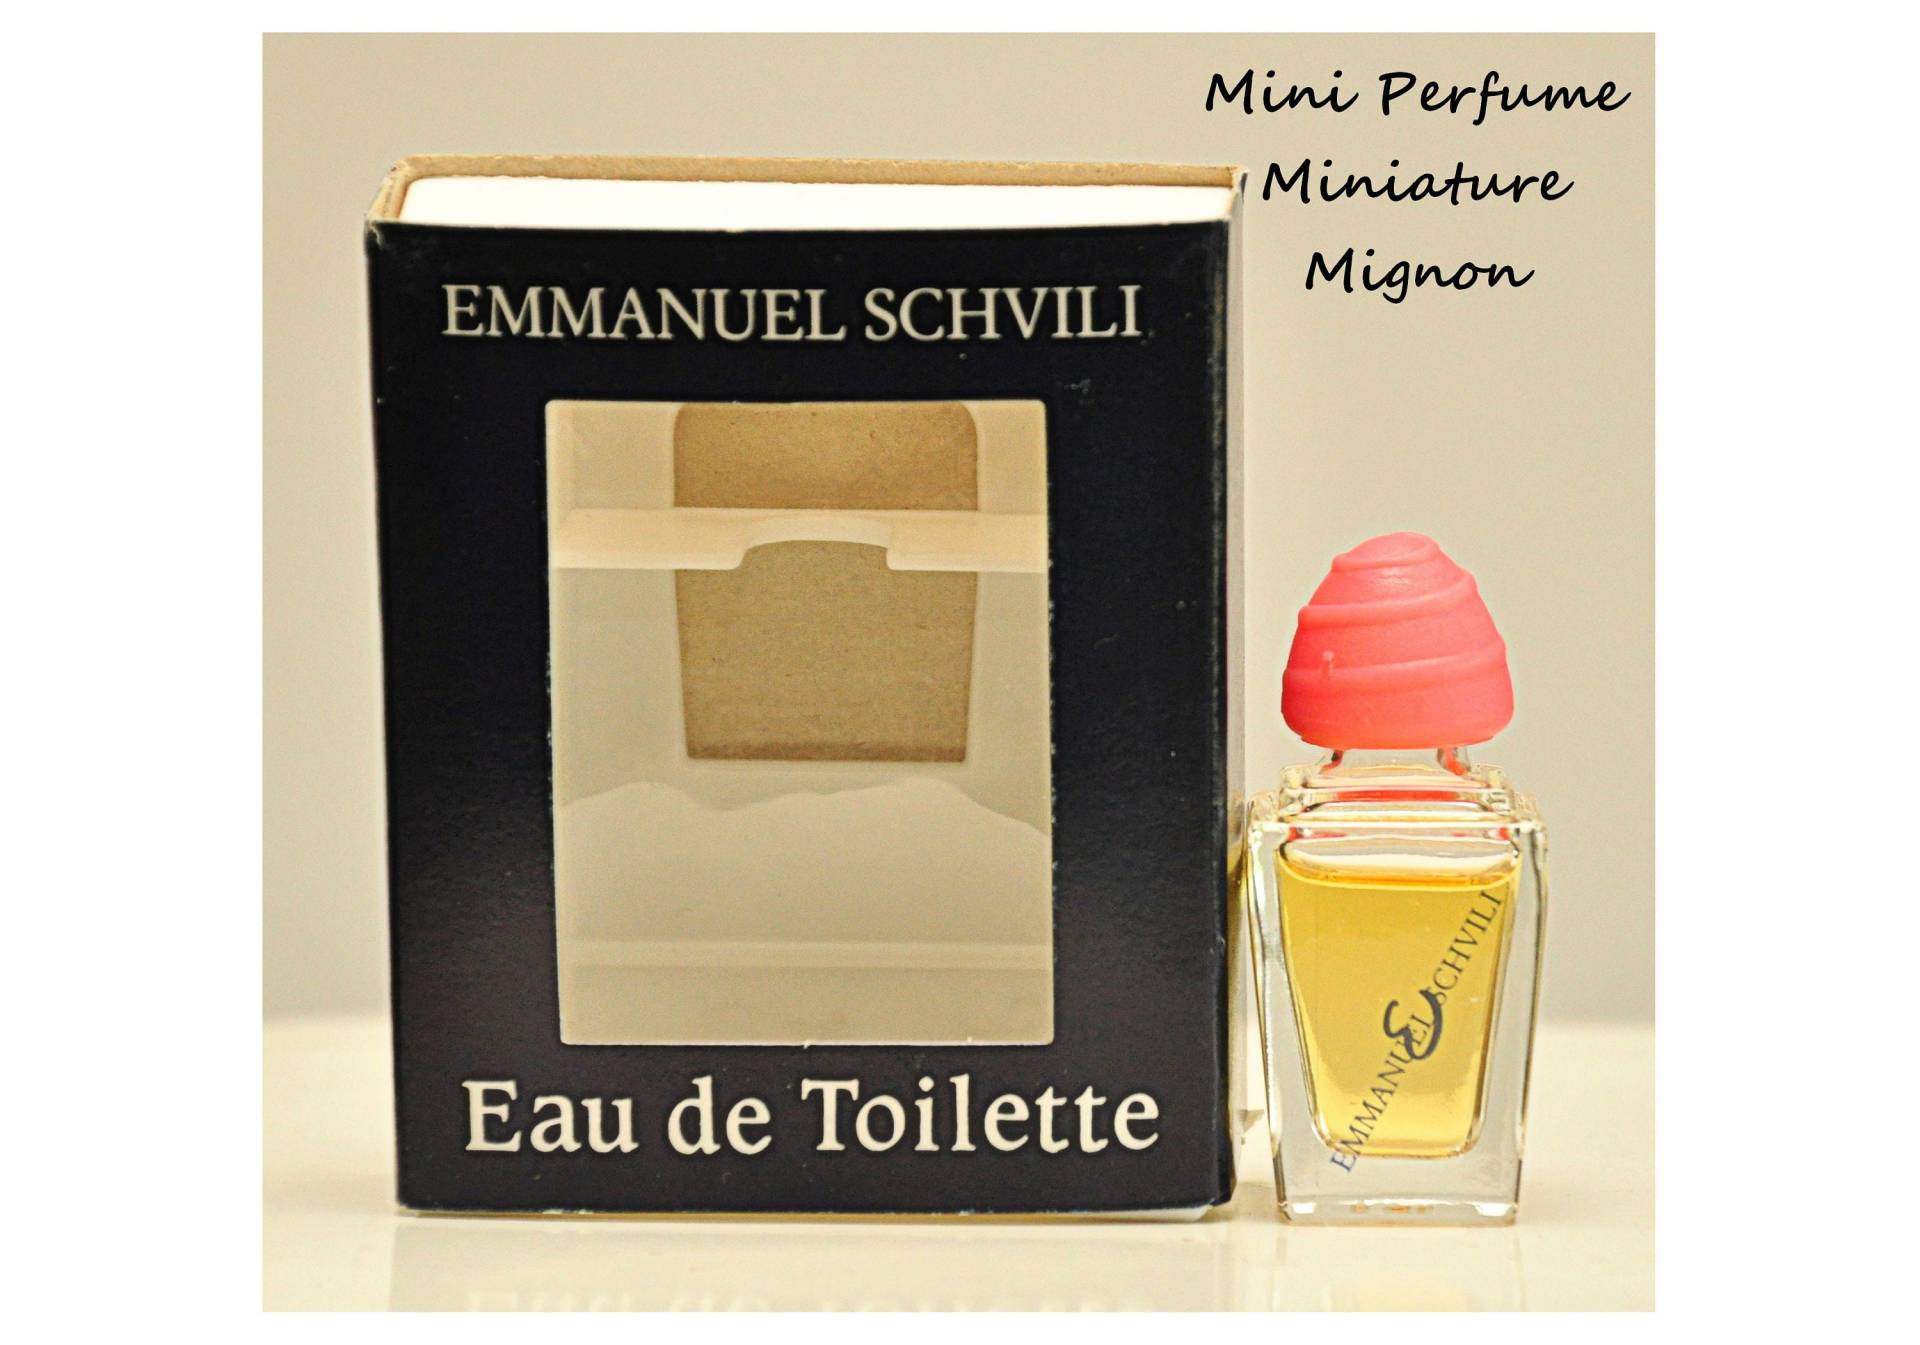 Emmanuel Schvili Von Eau De Toilette Edt 7, 5 Ml Miniatura Splash Non Spray Damenparfüm Seltene Vintage 80Er Jahre von YourVintagePerfume